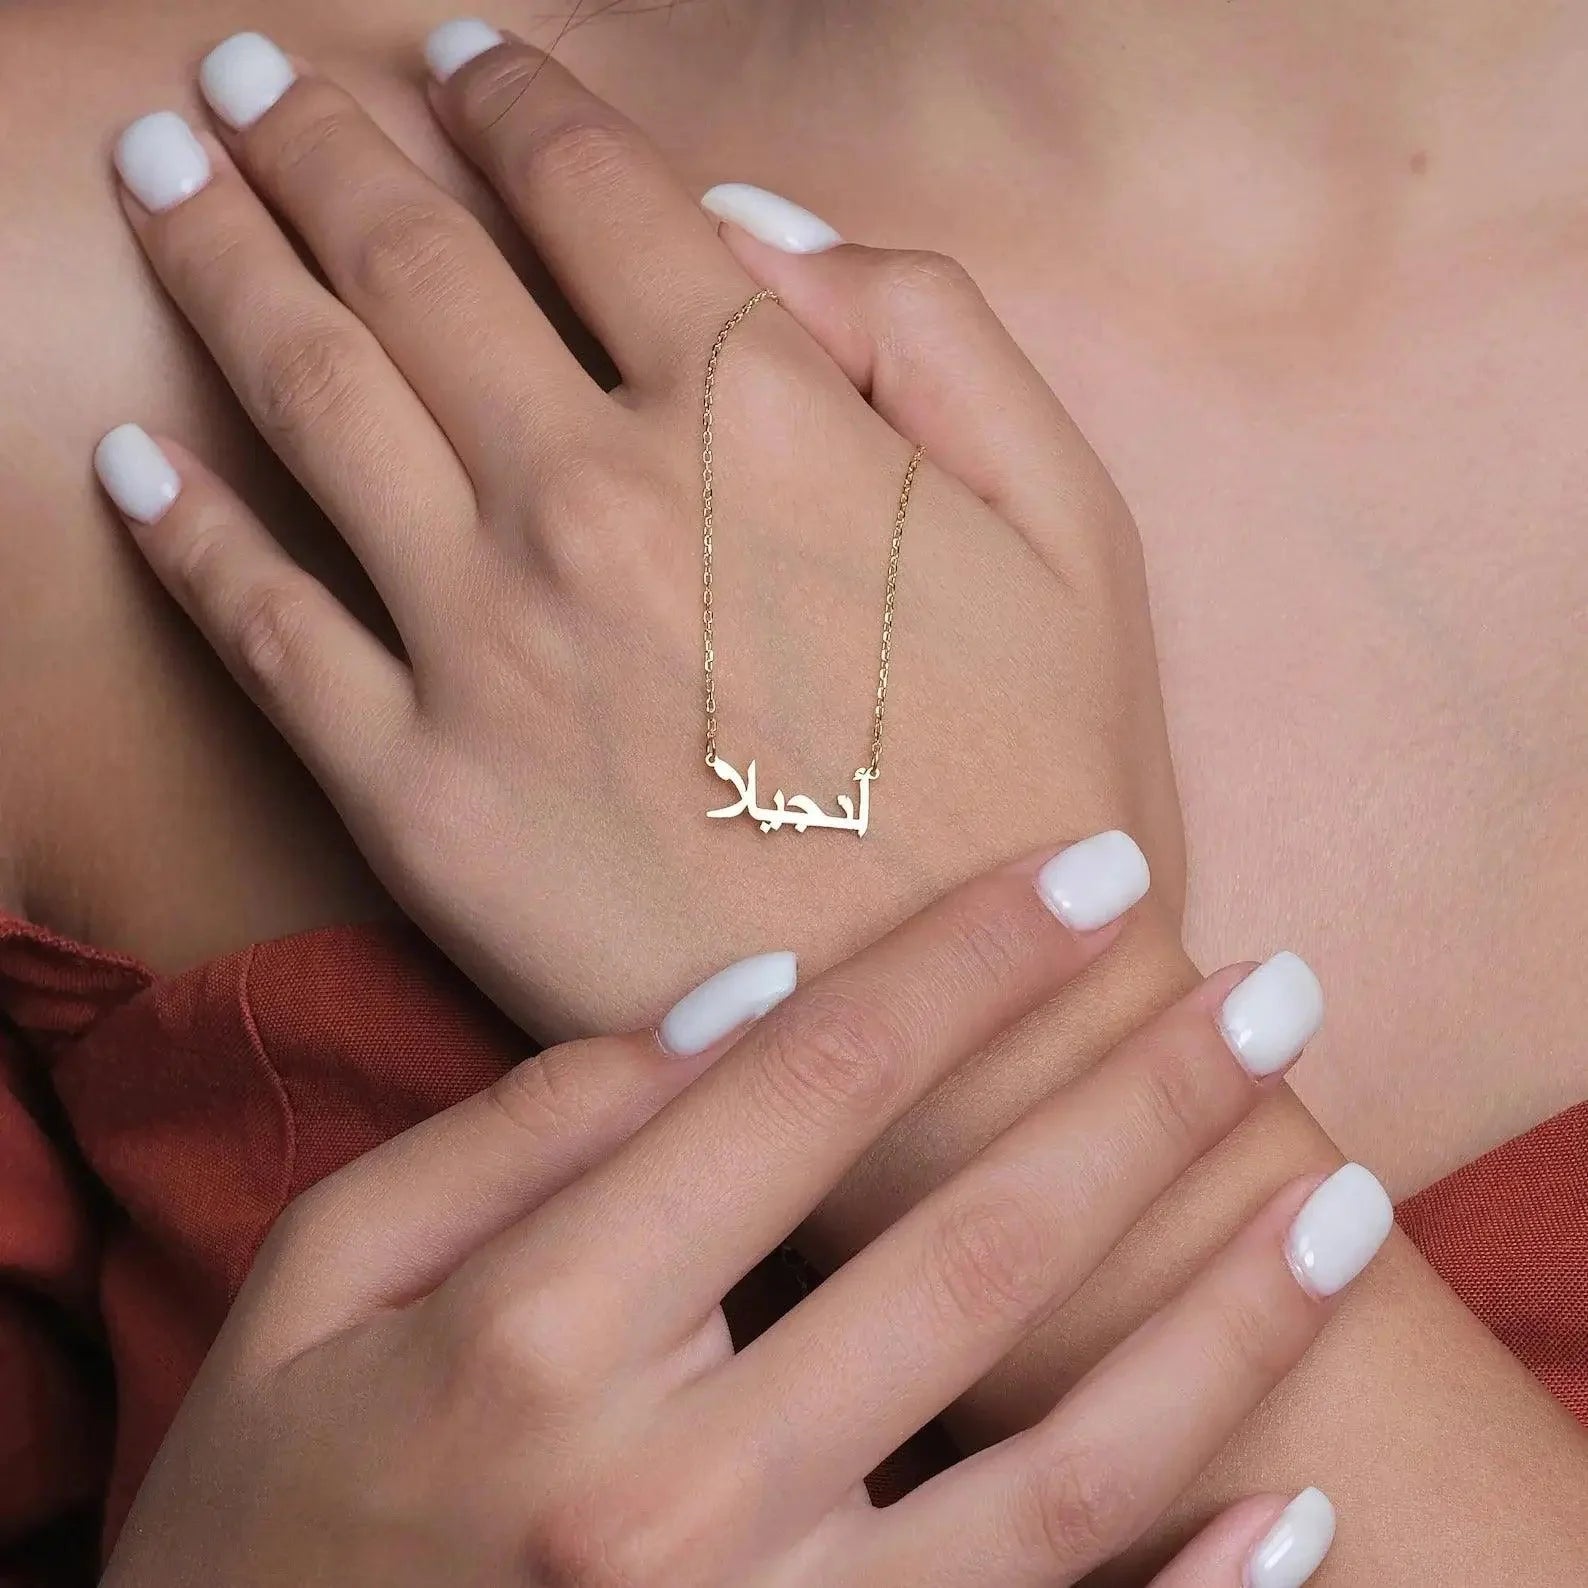 Bracelet à personnaliser avec votre prénom en Arabe